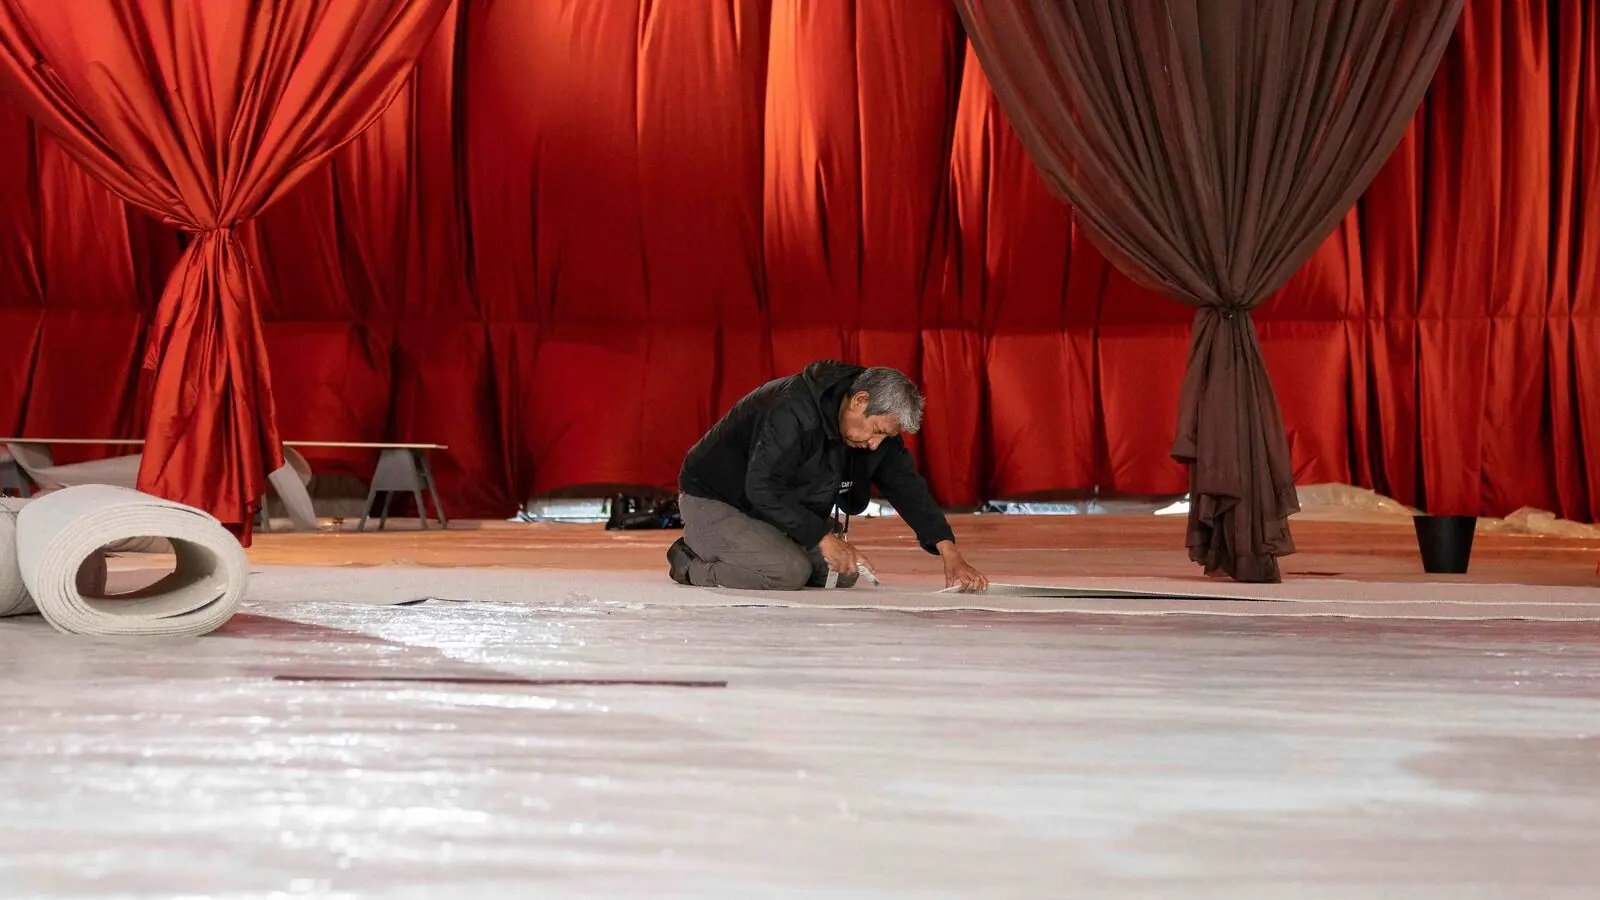 Festival del cinema e sfruttamento: un operaio solitario prepara il red carpet